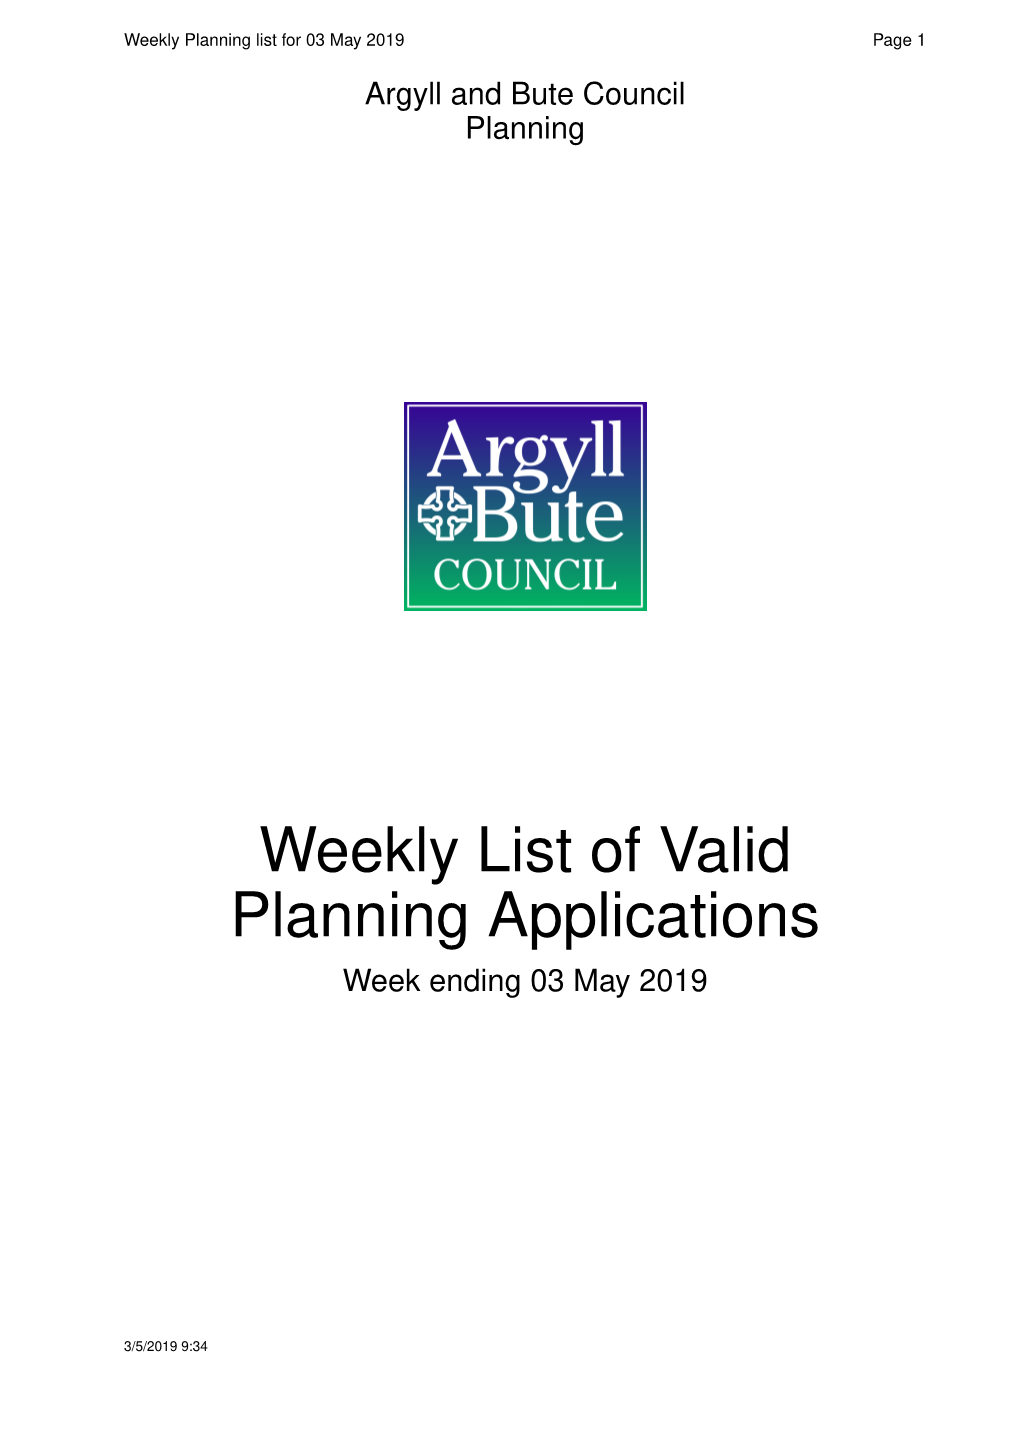 Weekly List of Valid Planning Applications Week Ending 03 May2019